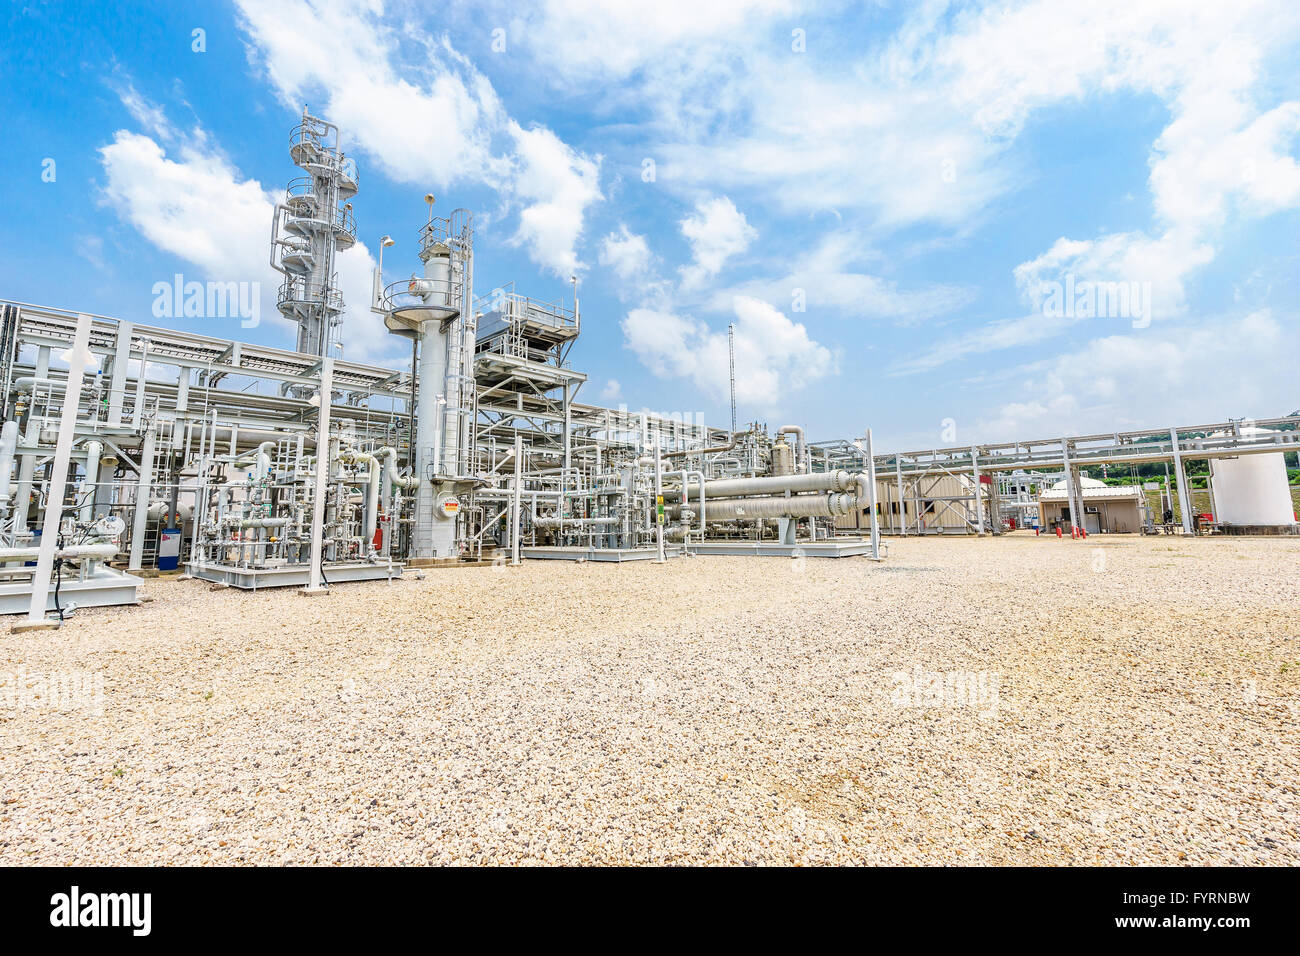 Raffinerie de pétrole se trouve dans ciel nuageux Banque D'Images